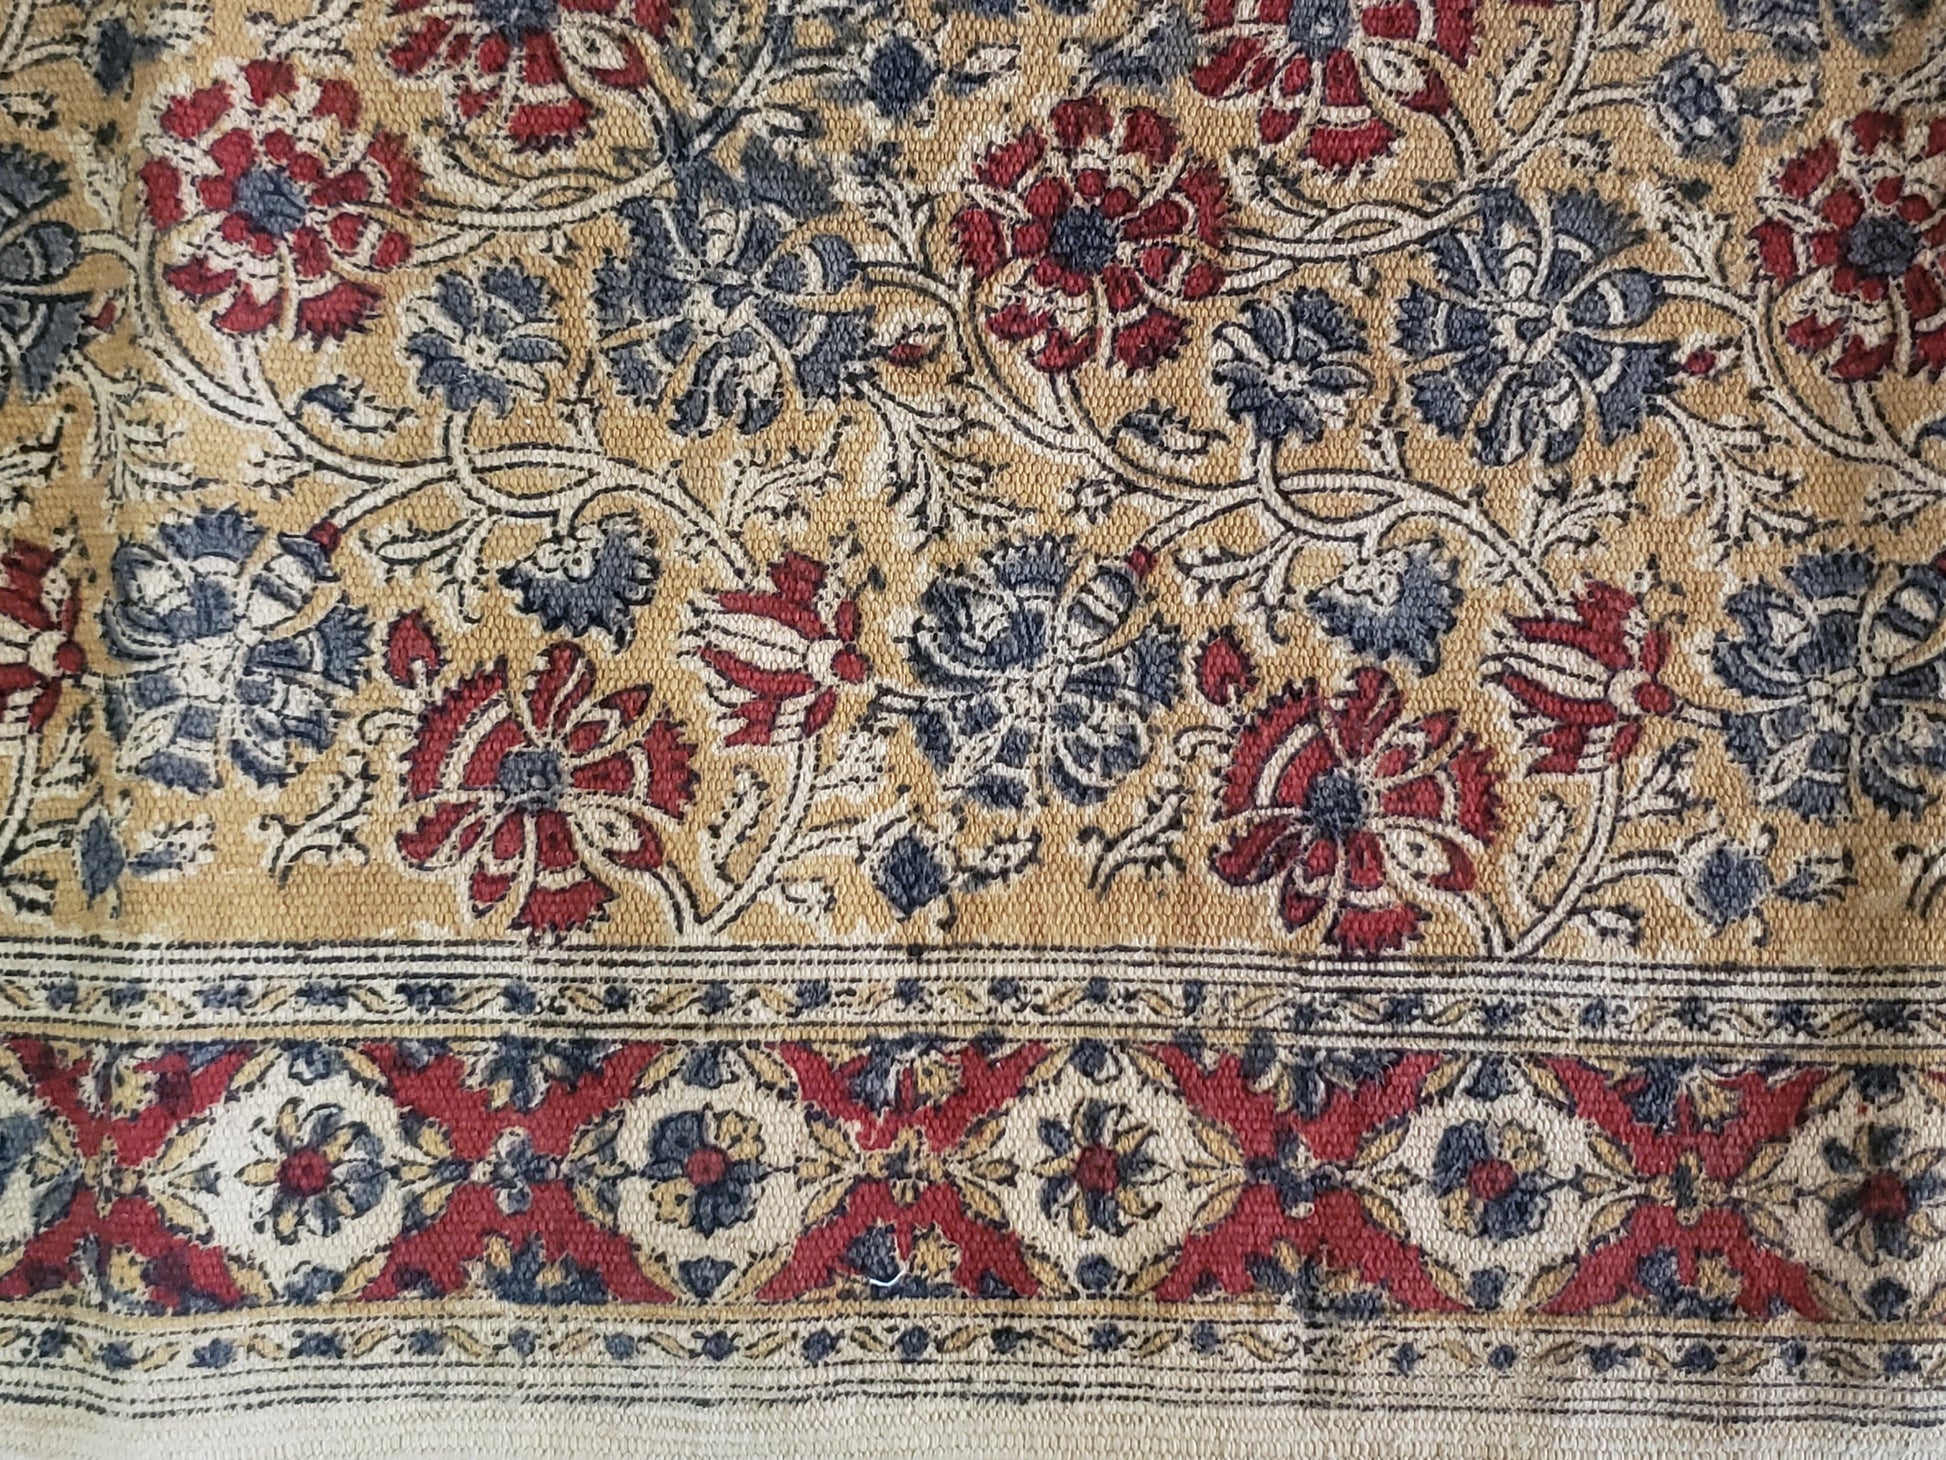 Detalle de tapete 100% algodón estampado a mano con diseño tradicional Kalamkari, base ocre con diseño floral en tonos tierra. Hecho en la India.